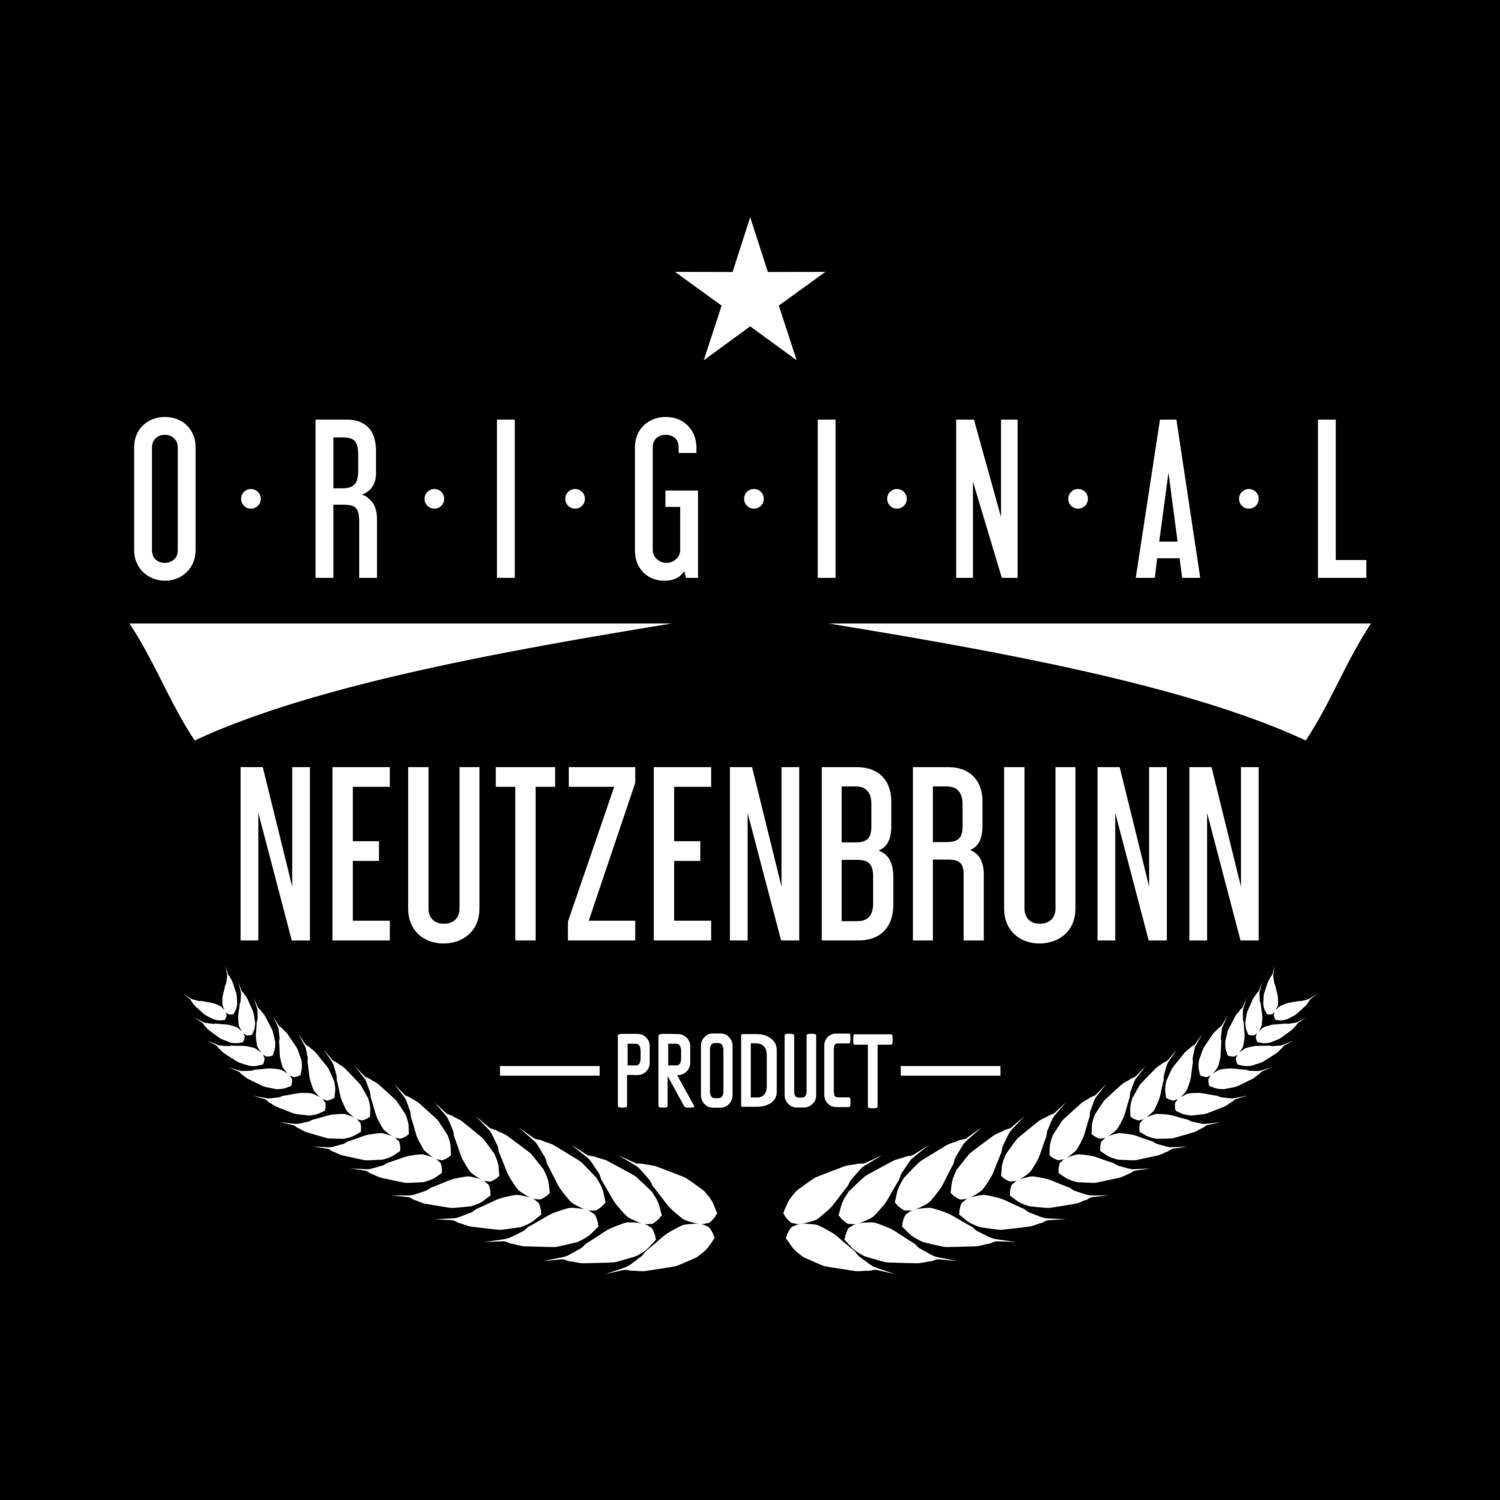 Neutzenbrunn T-Shirt »Original Product«